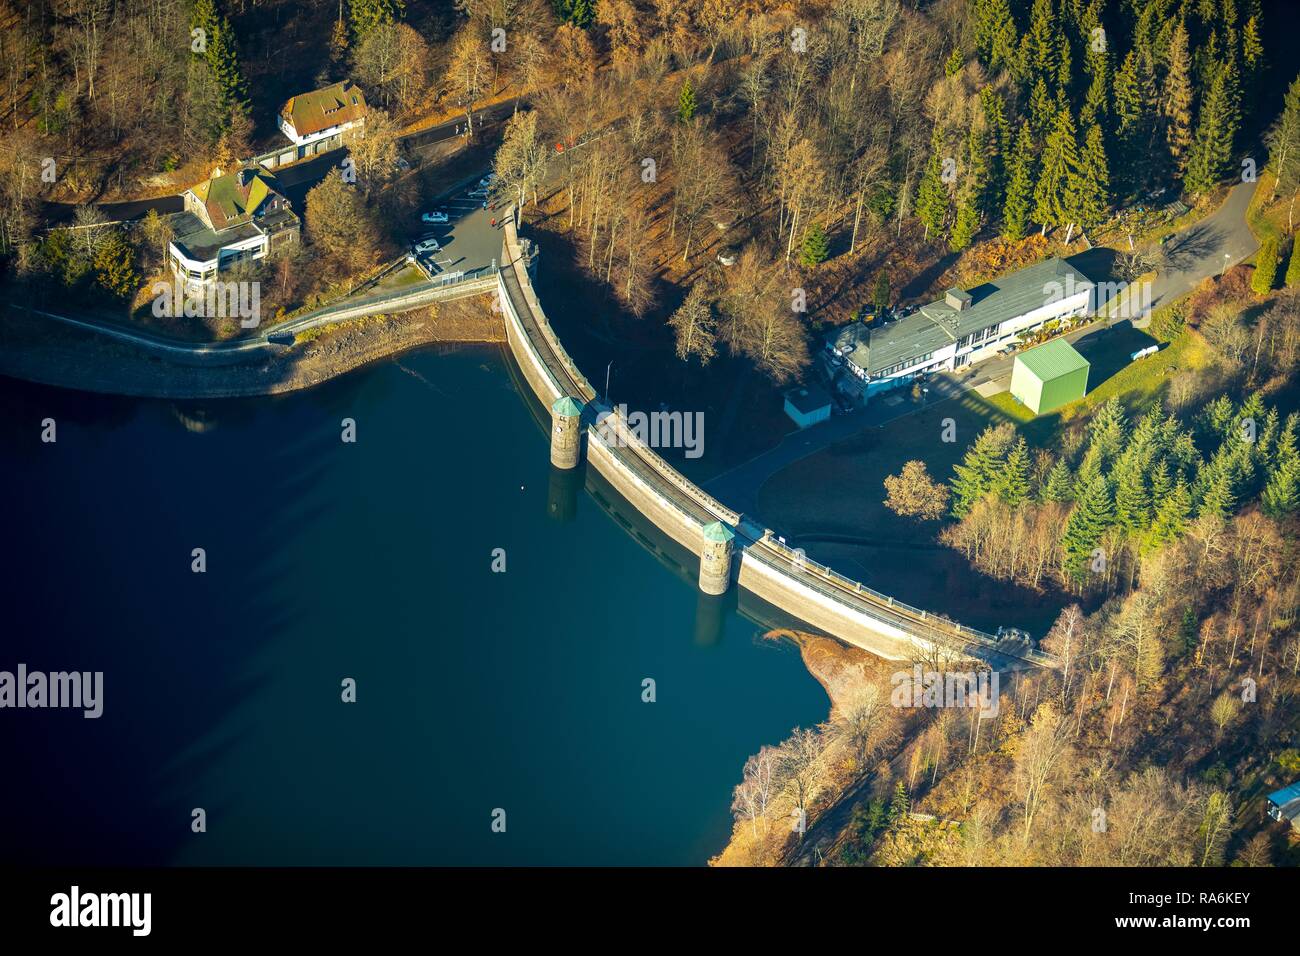 Aerial view, Dam wall, Fürwiggetalsperre, Meinerzhagen, Sauerland, dam, North Rhine-Westphalia, Germany Stock Photo